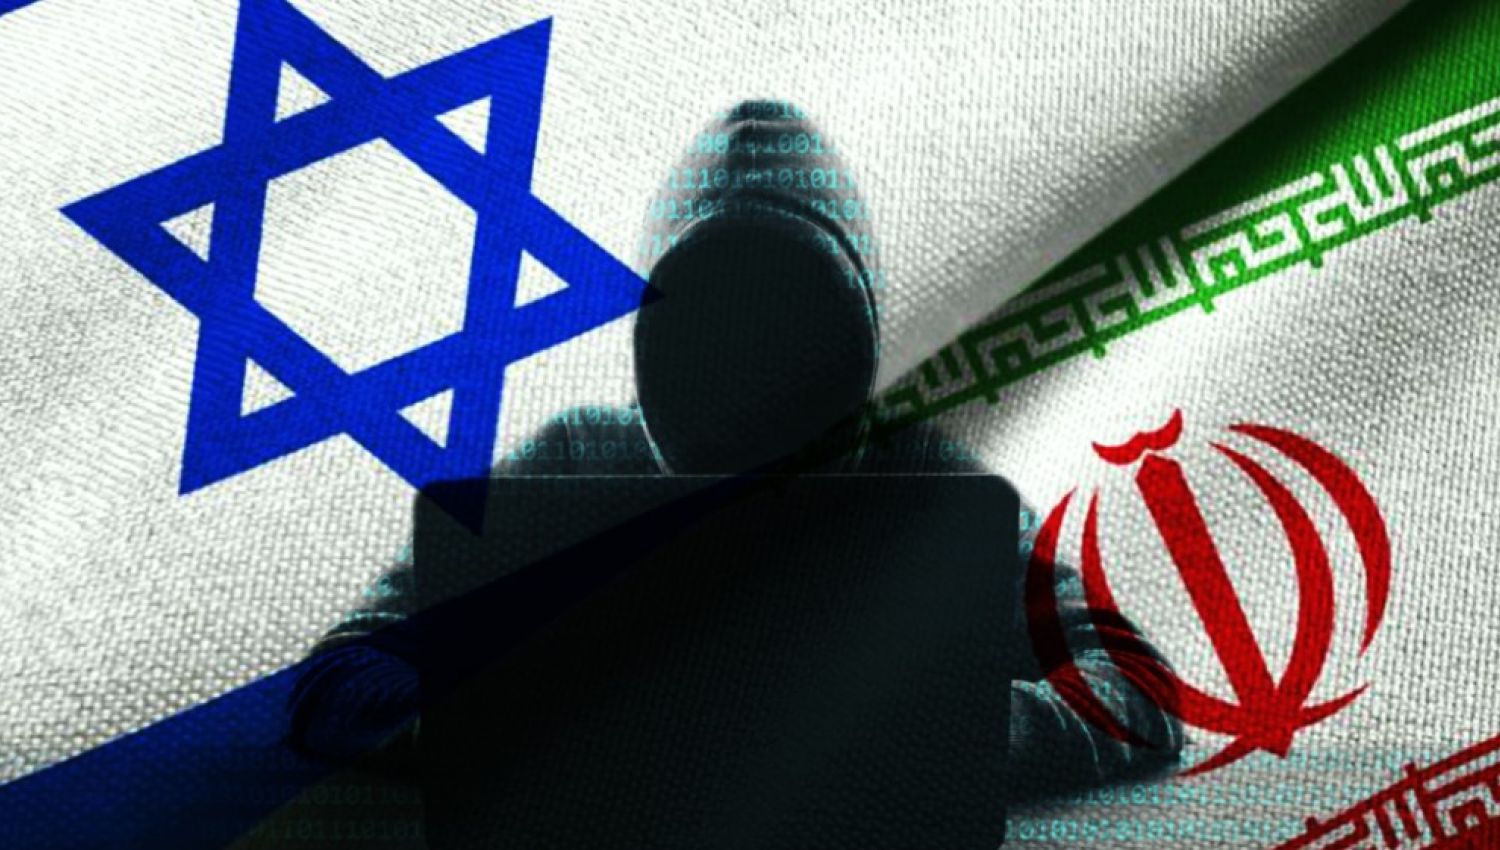 يديعوت أحرنوت: الهجمات السيبرانية الإيرانية قادرة على تعطيل اسرائيل